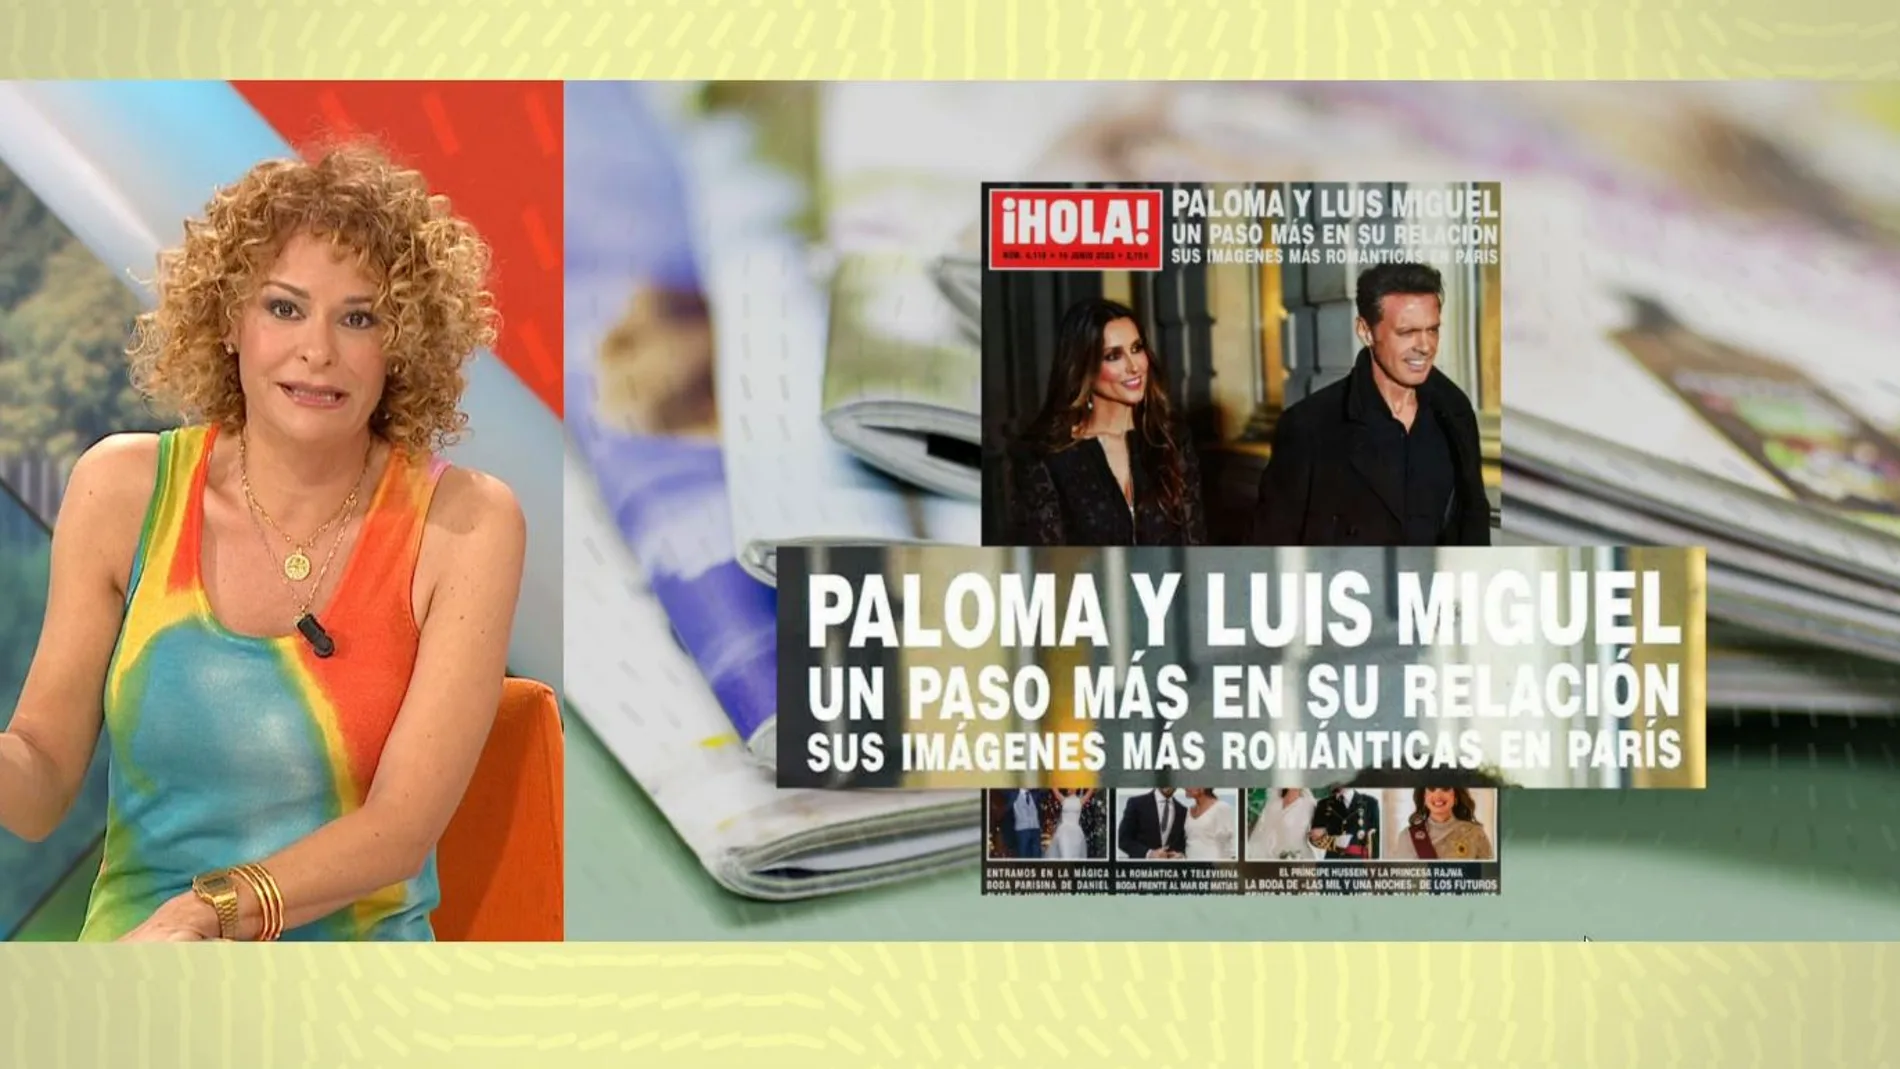 La exclusiva de Hola con fotos de Paloma Cuevas y Luis Miguel